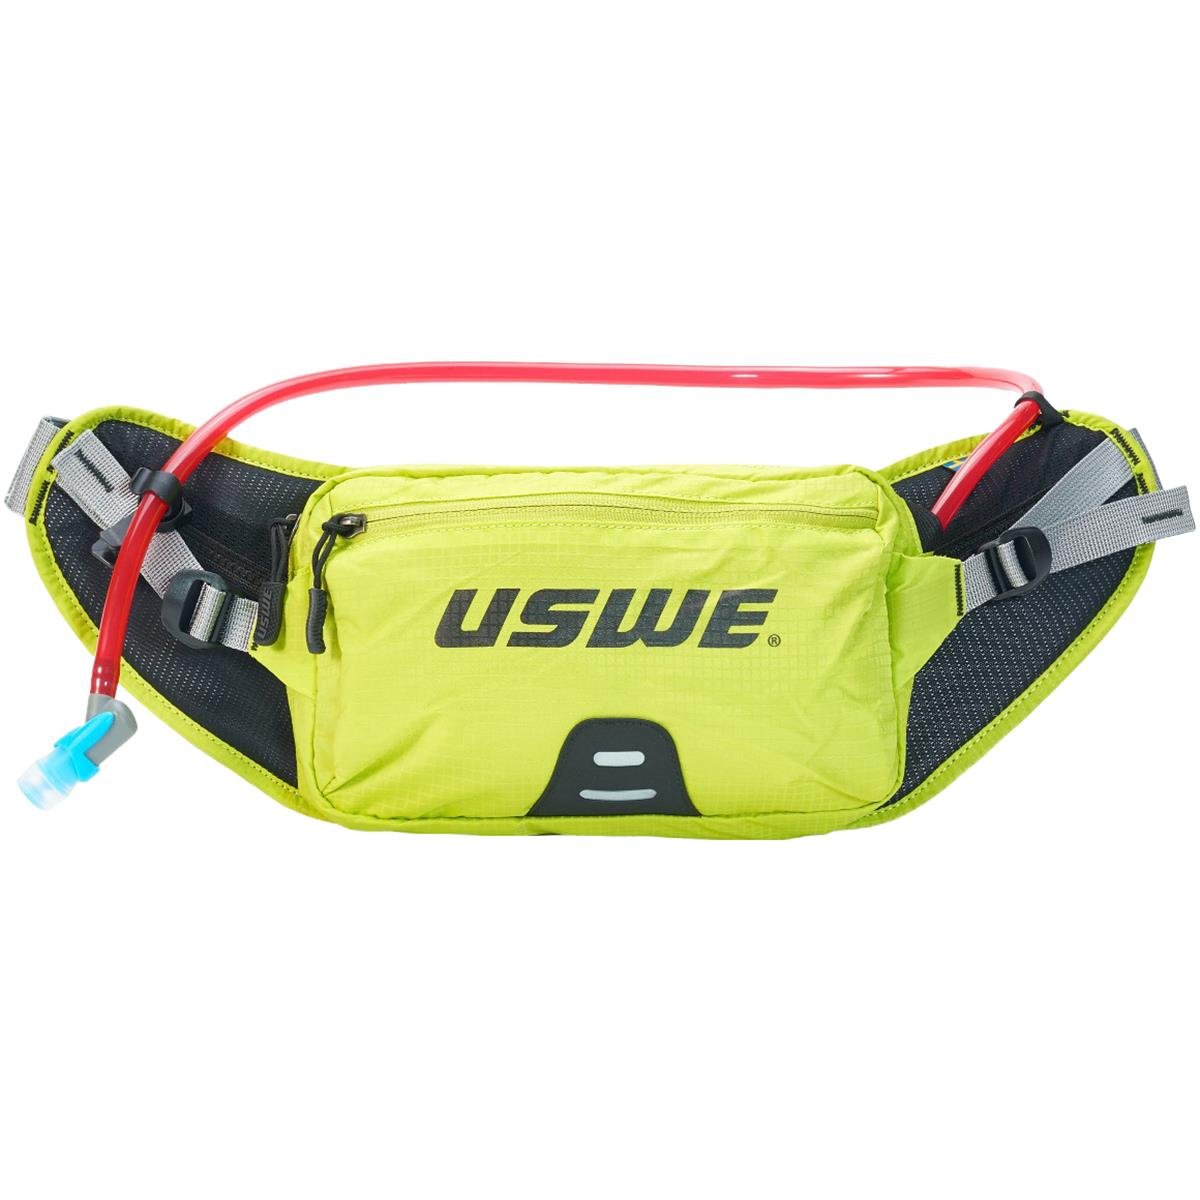 USWE Hüfttasche mit Trinksystem 1 Liter Zulo 2 Gelb